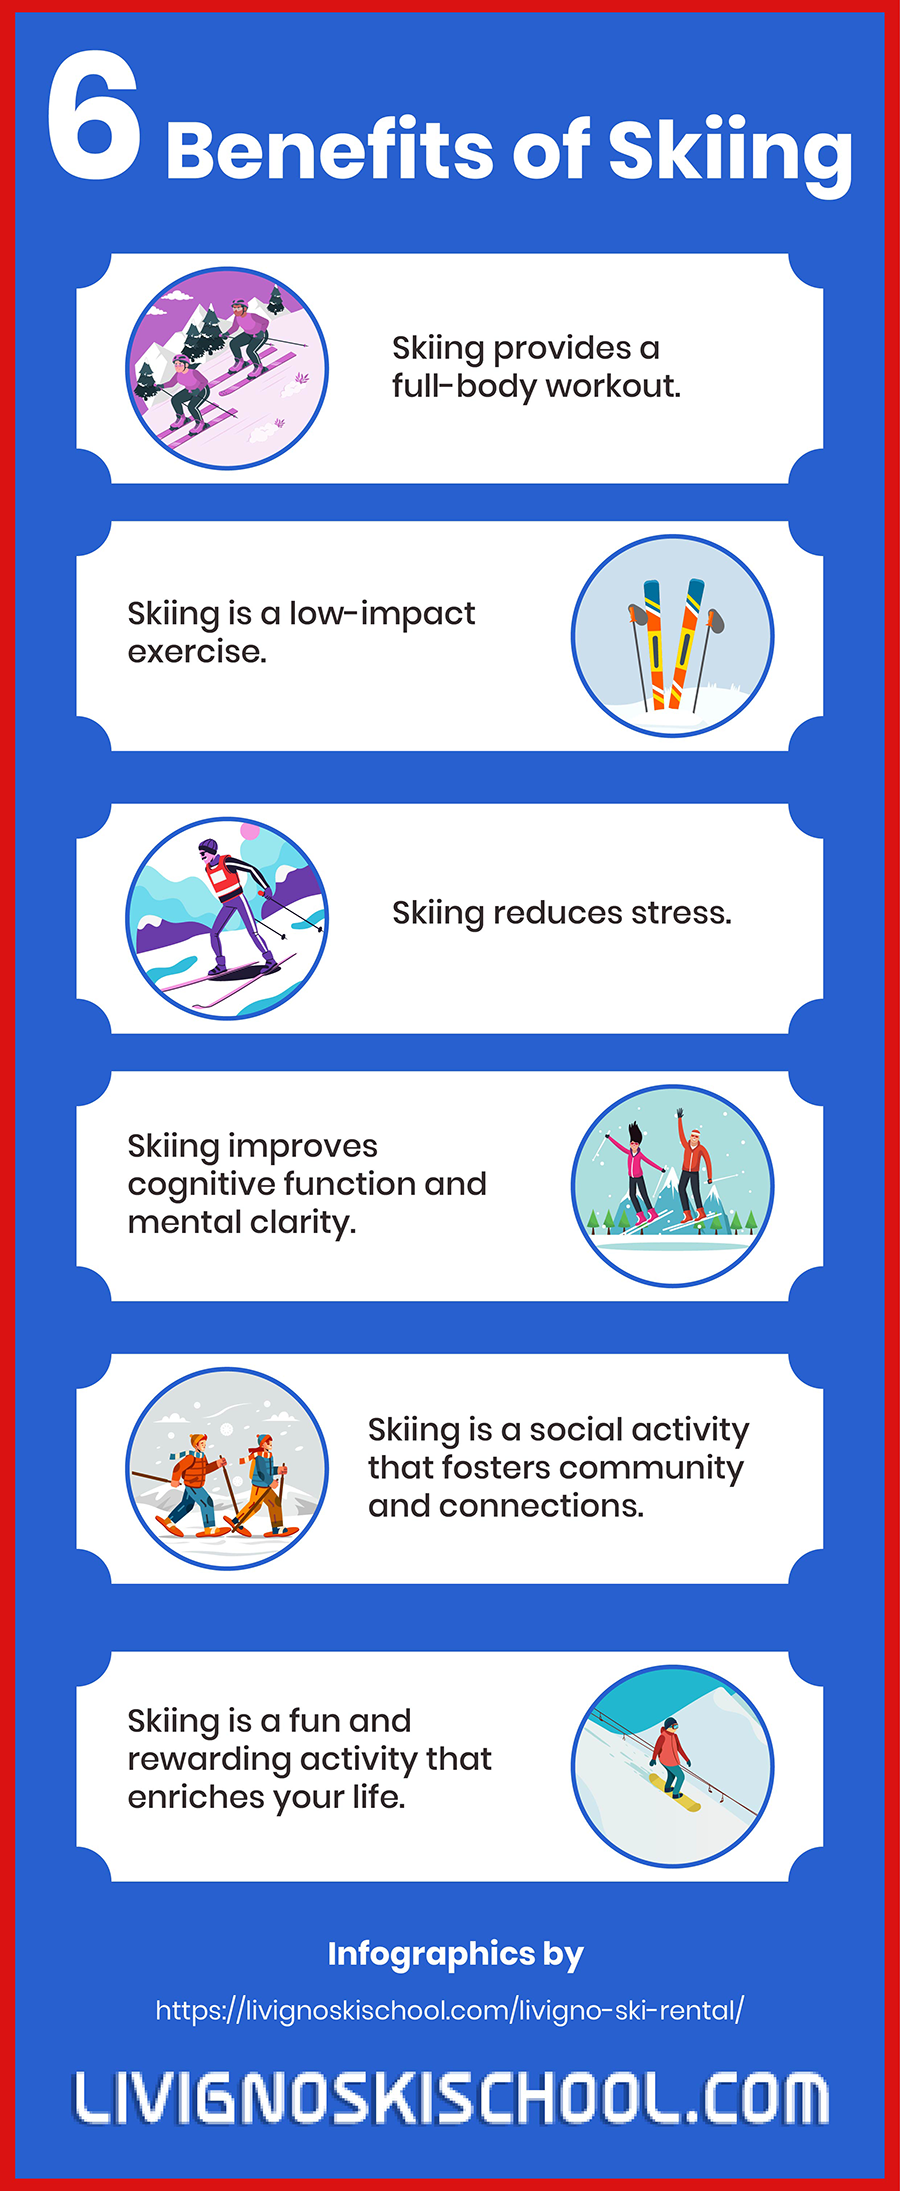 Benefits of Skiing